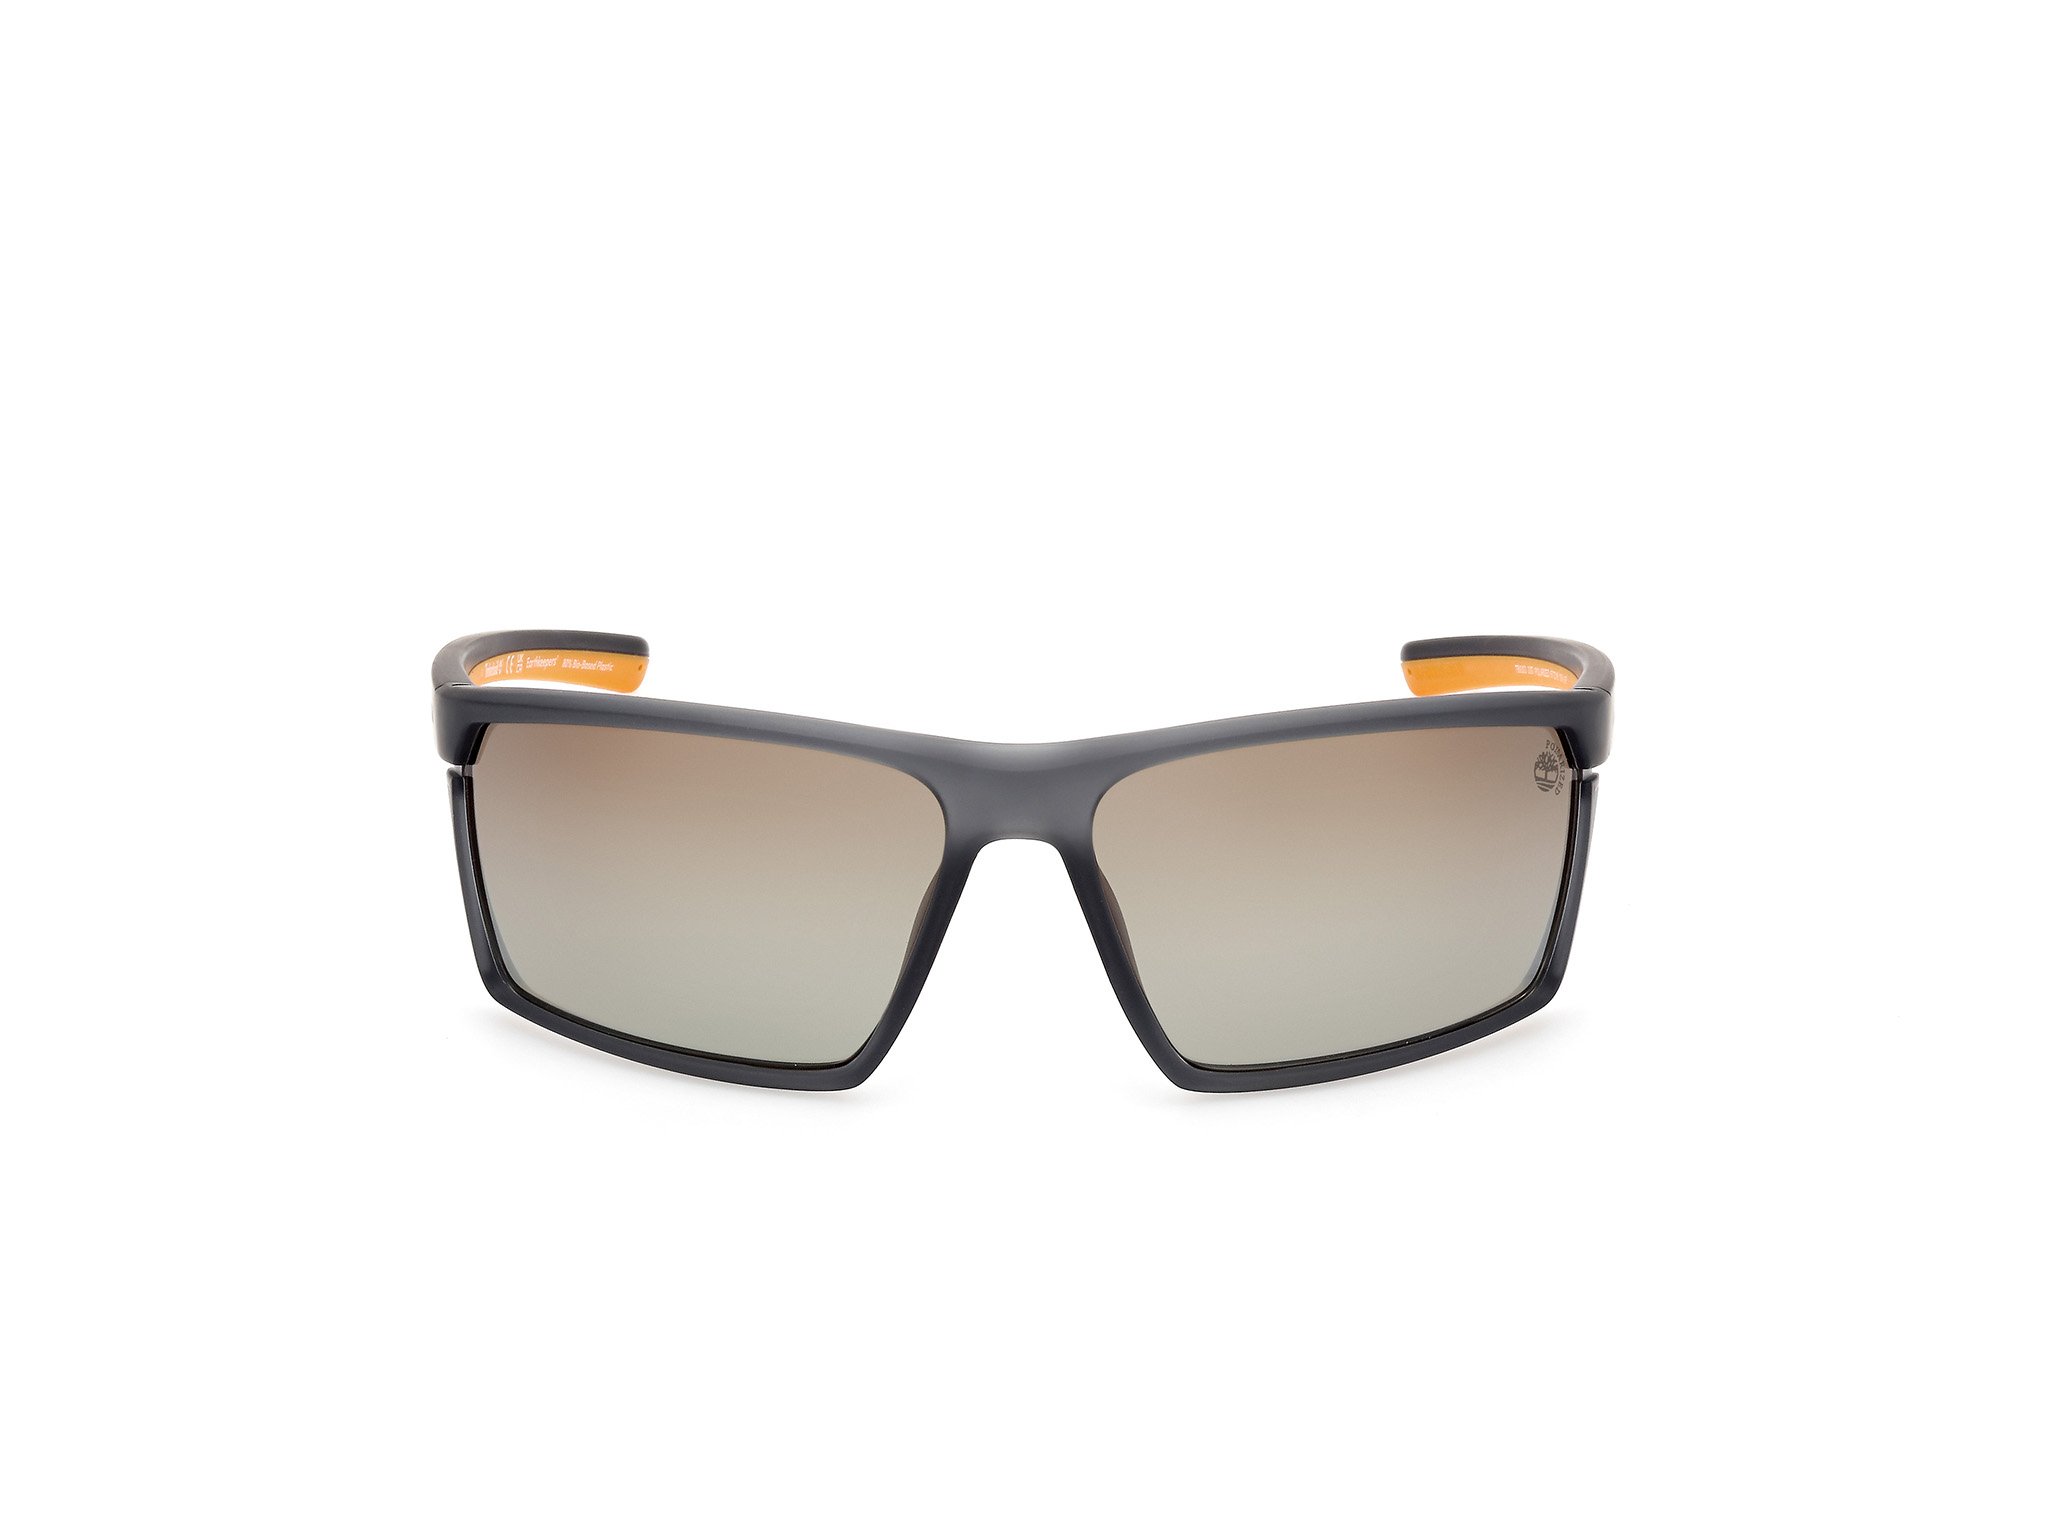 Das Bild zeigt die Sonnenbrille TB9333 20D von der Marke Timberland in grau matt.